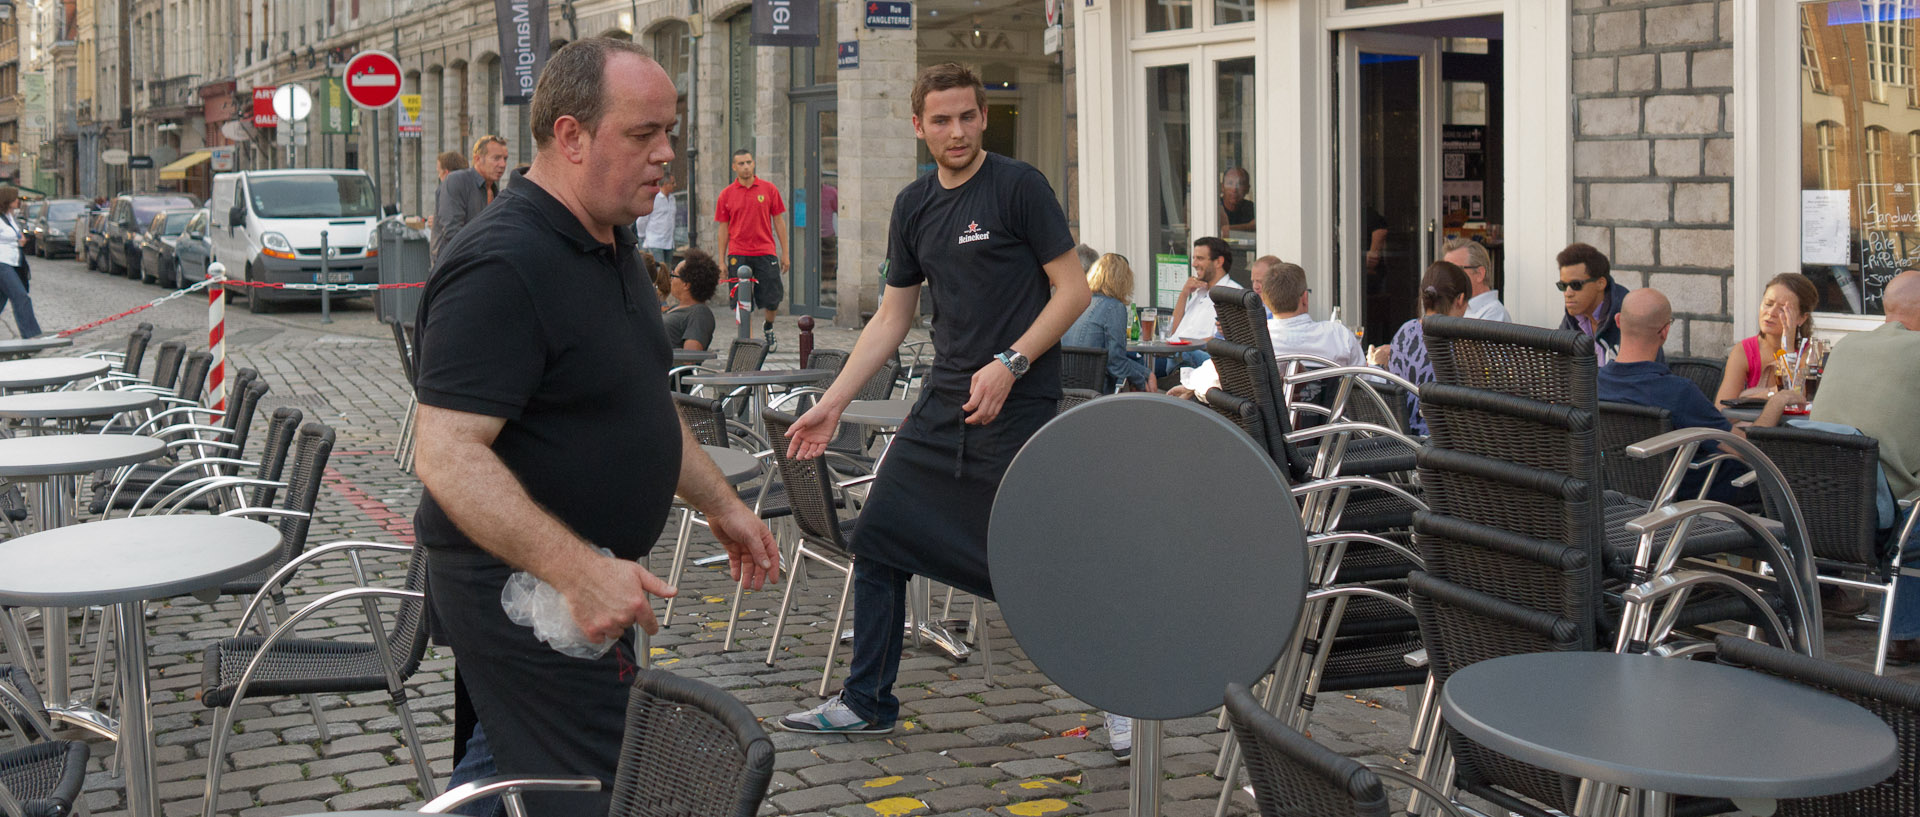 Préparation de la terrasse pour la braderie, au café des Arts, à Lille.